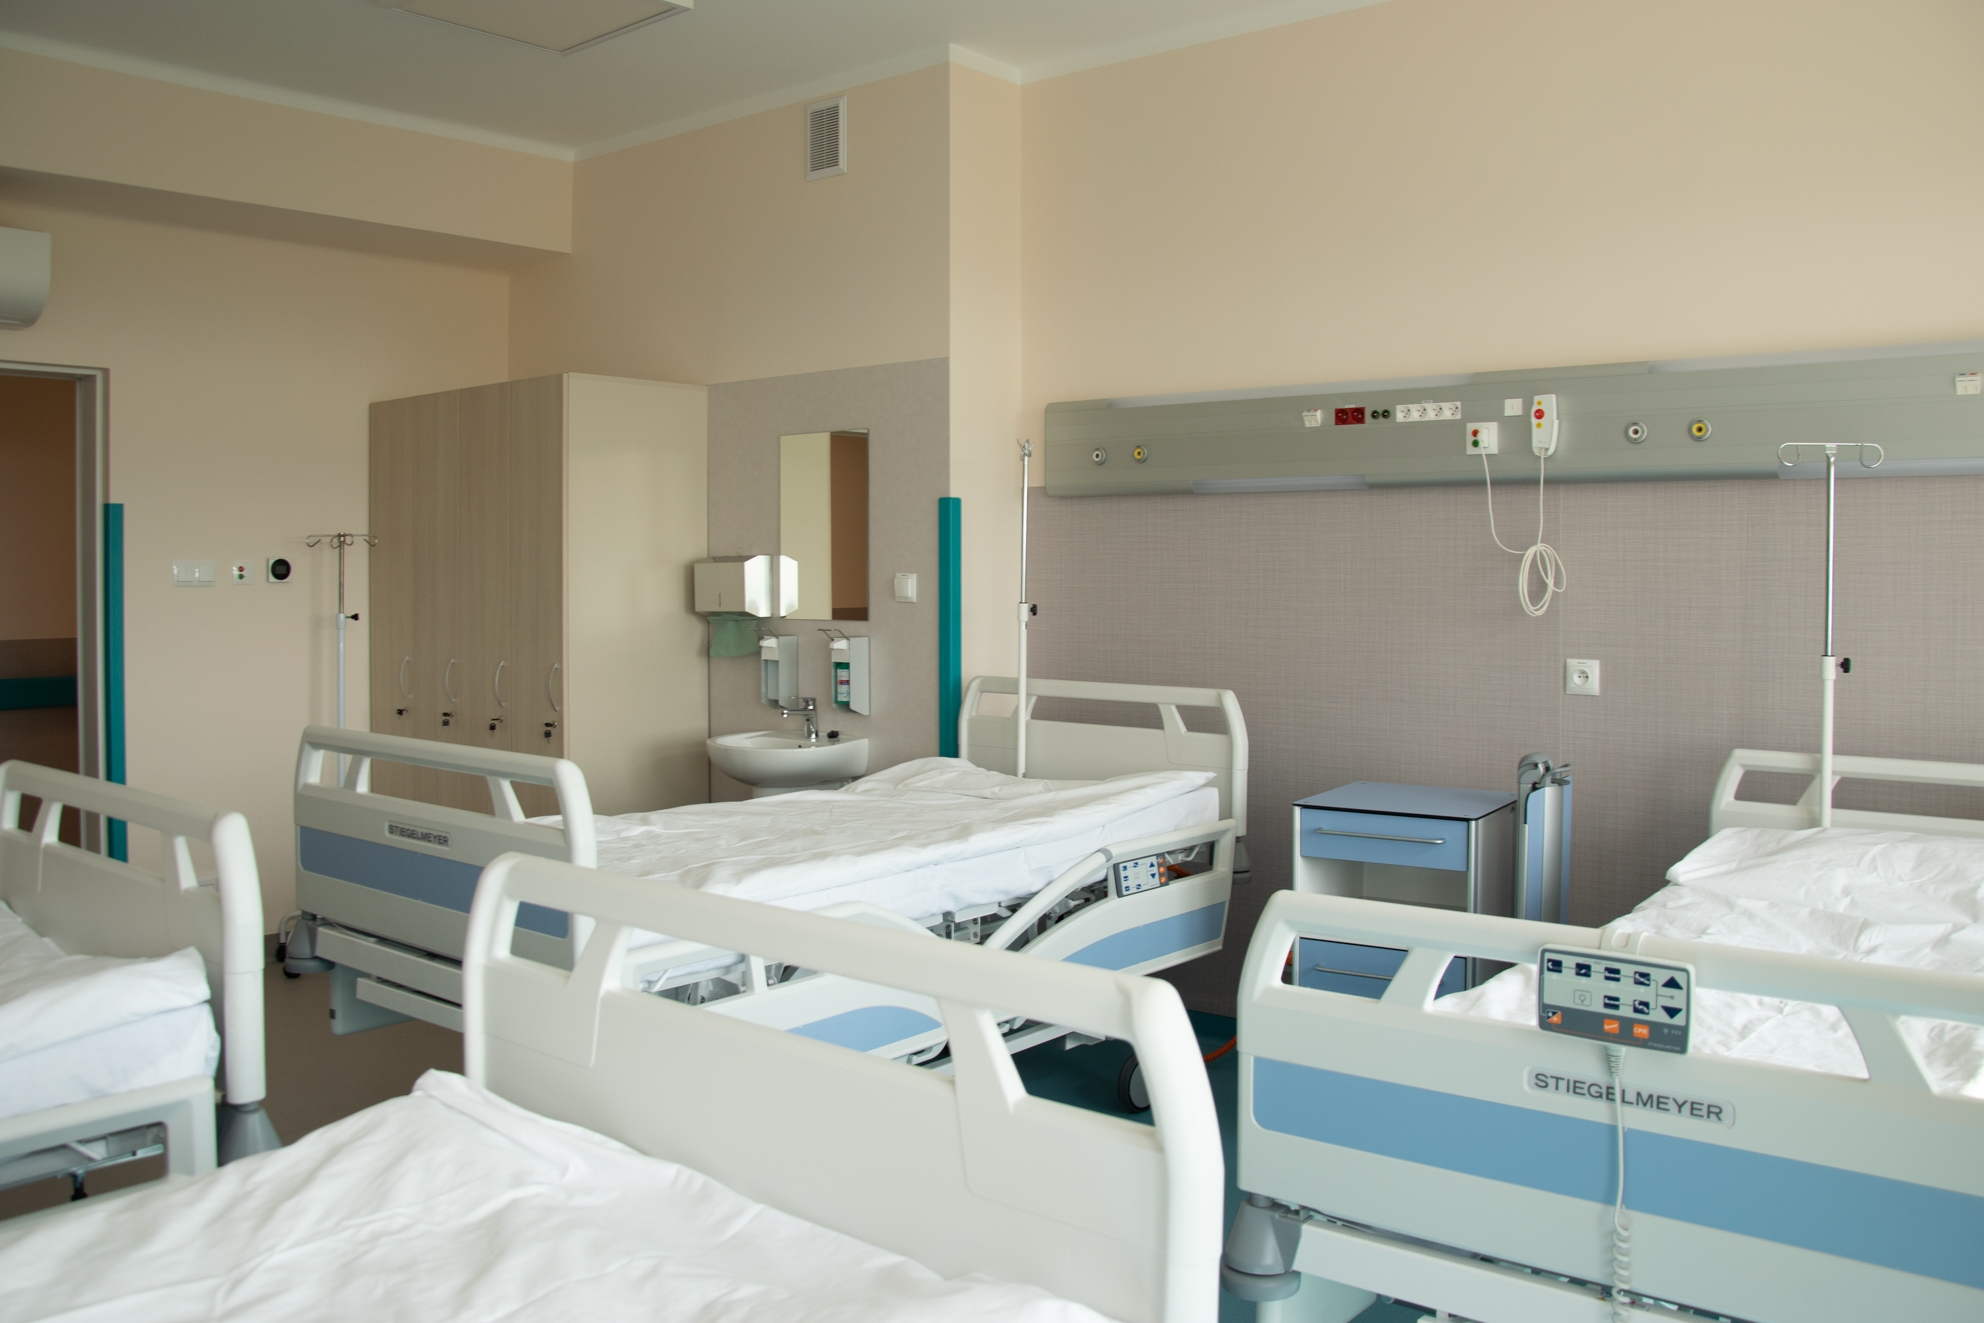 W salach dla pacjentów są 4 łóżka, szafki oraz interkomy i klimatyzacja 